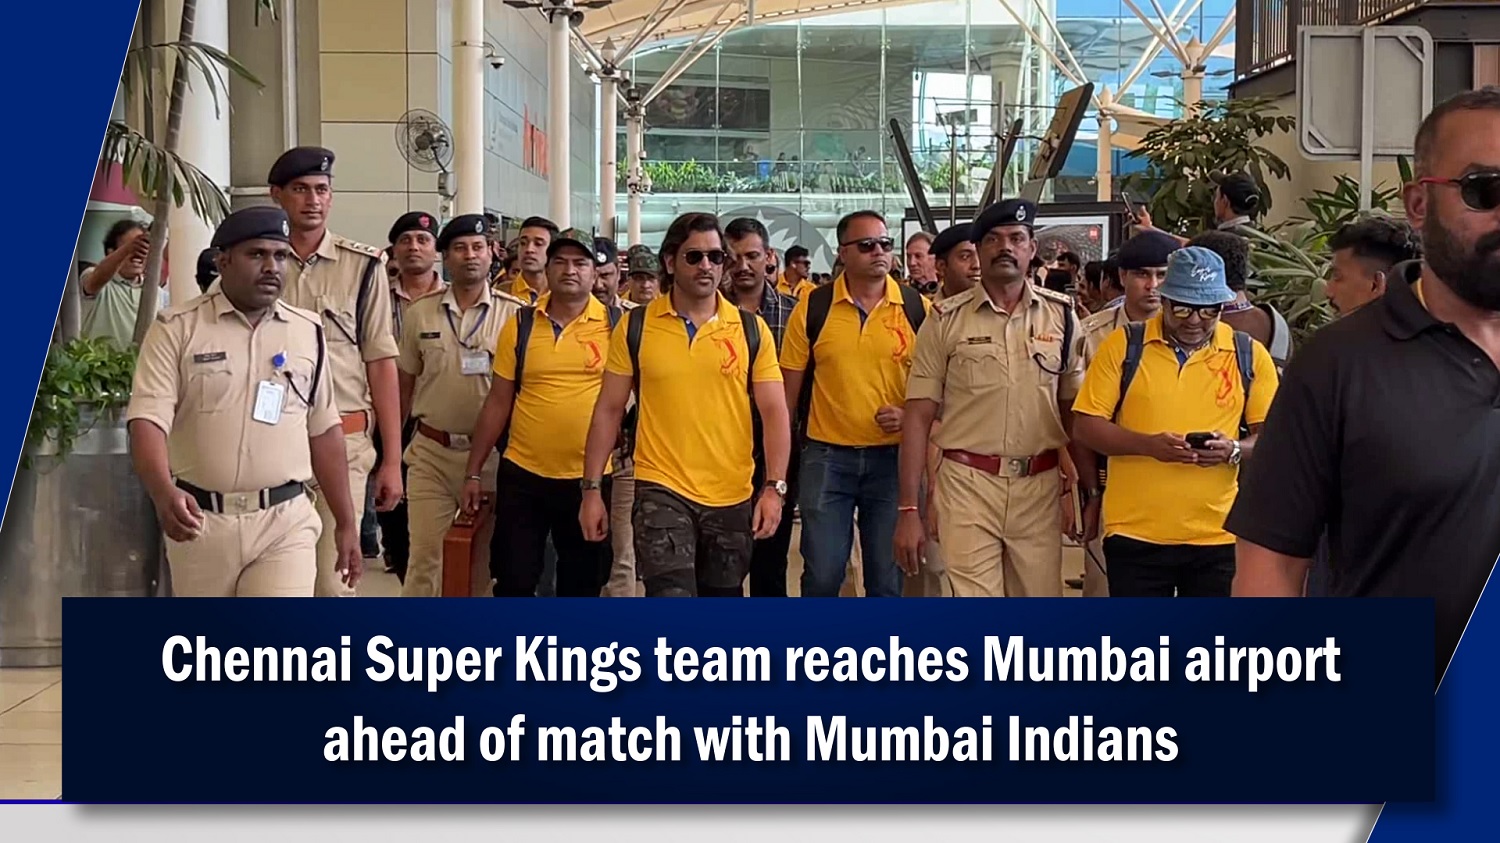 Chennai Super Kings team reaches Mumbai airport ahead of match with Mumbai Indians